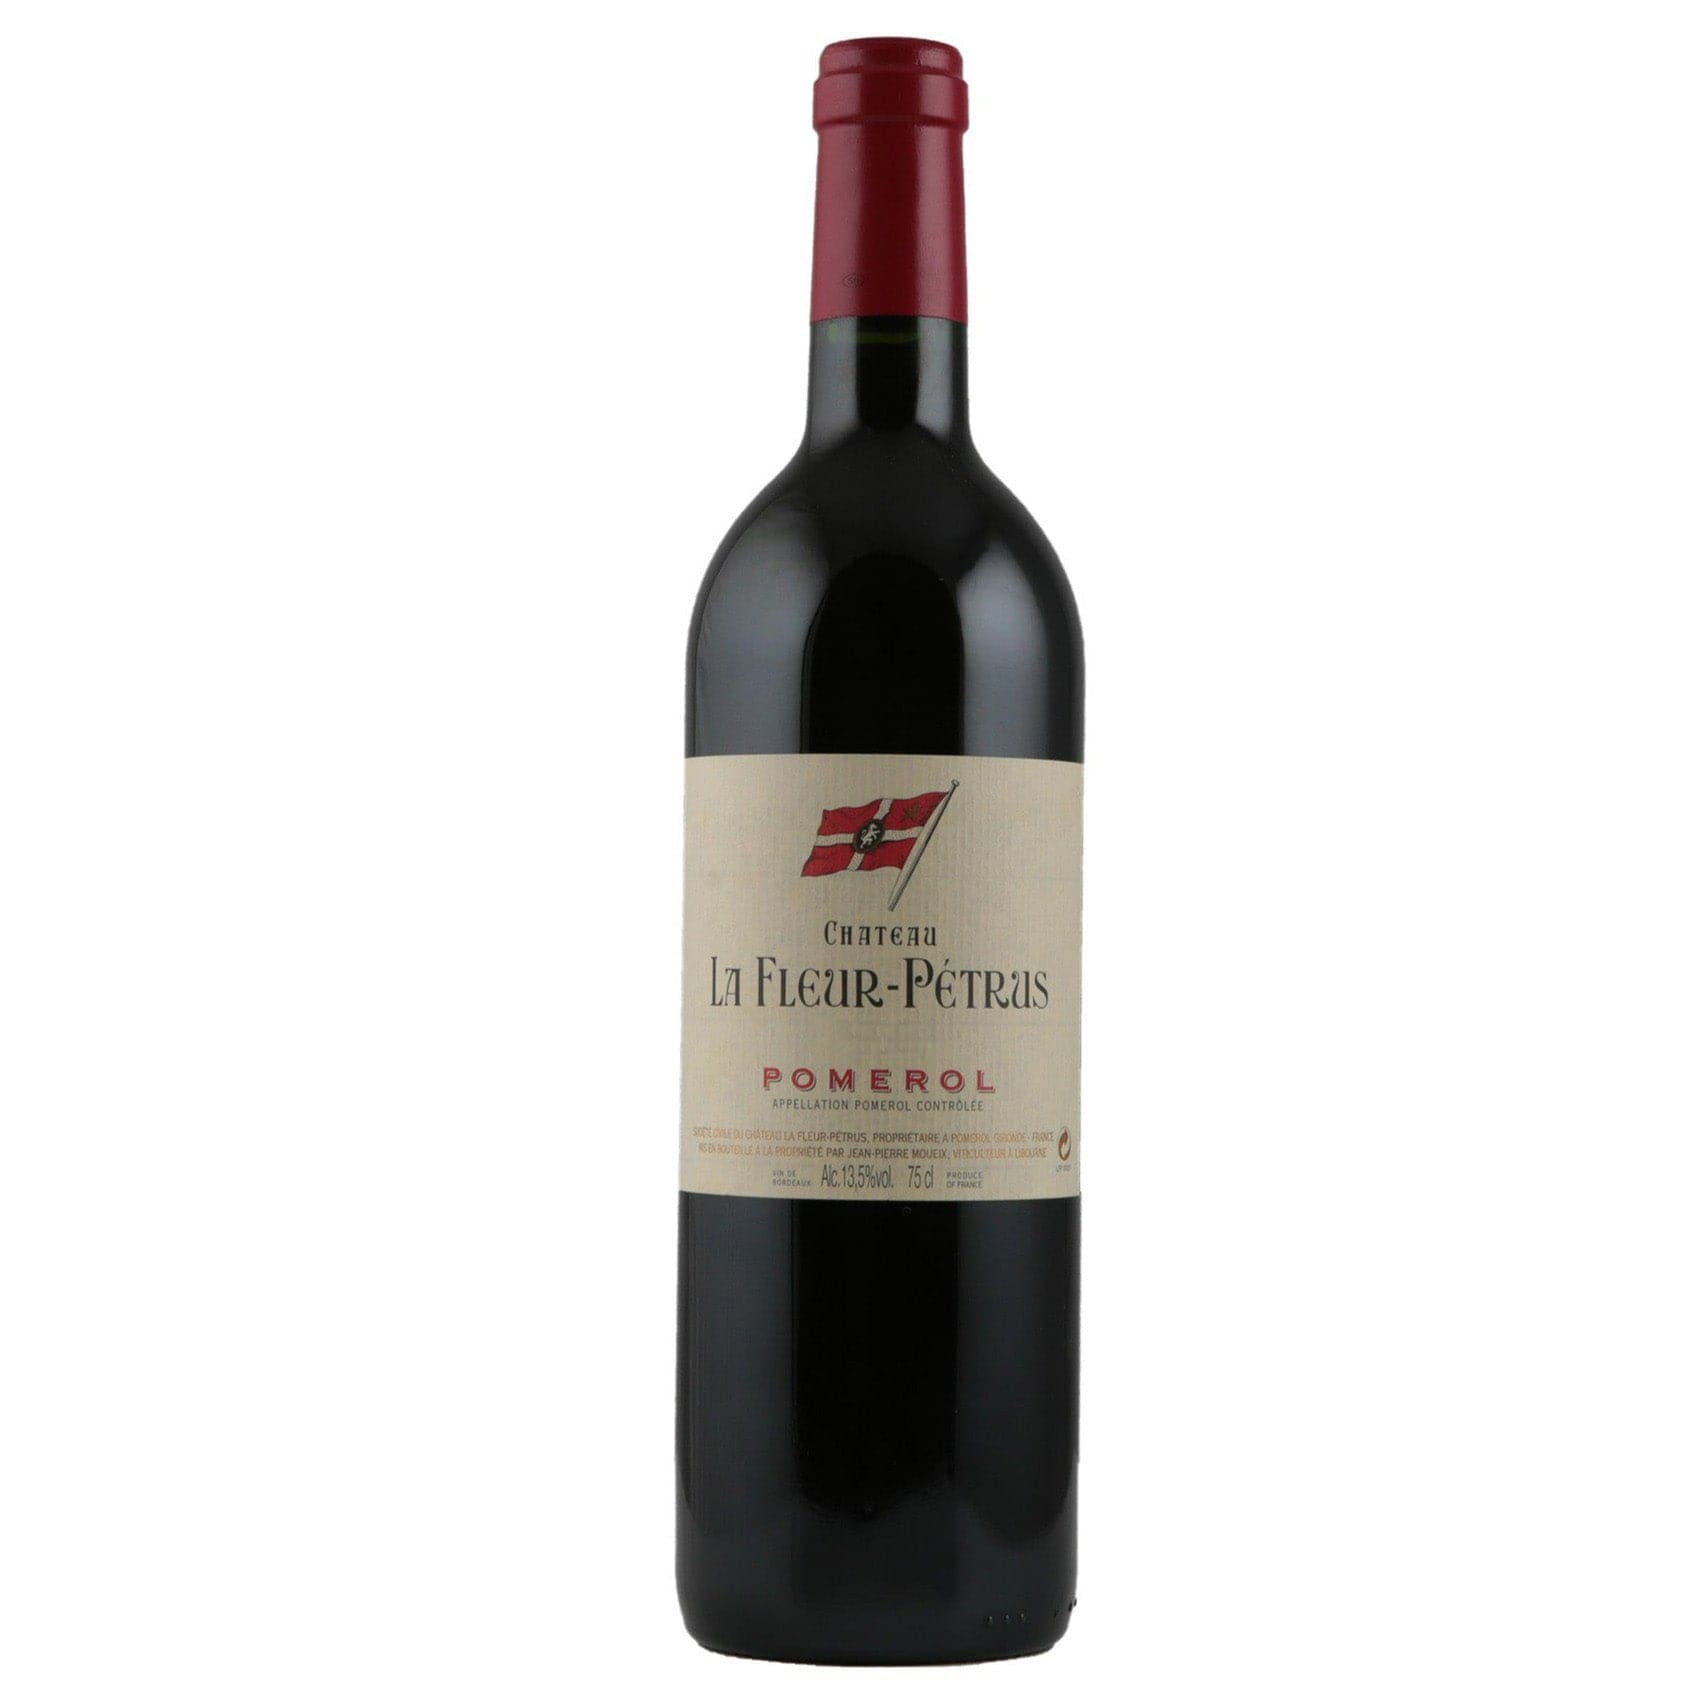 Single bottle of Red wine Ch. La Fleur-Petrus, Ch. La Fleur-Petrus, Pomerol, 2005 91% Merlot, 6% Cabernet Franc & 3% Petit Verdot